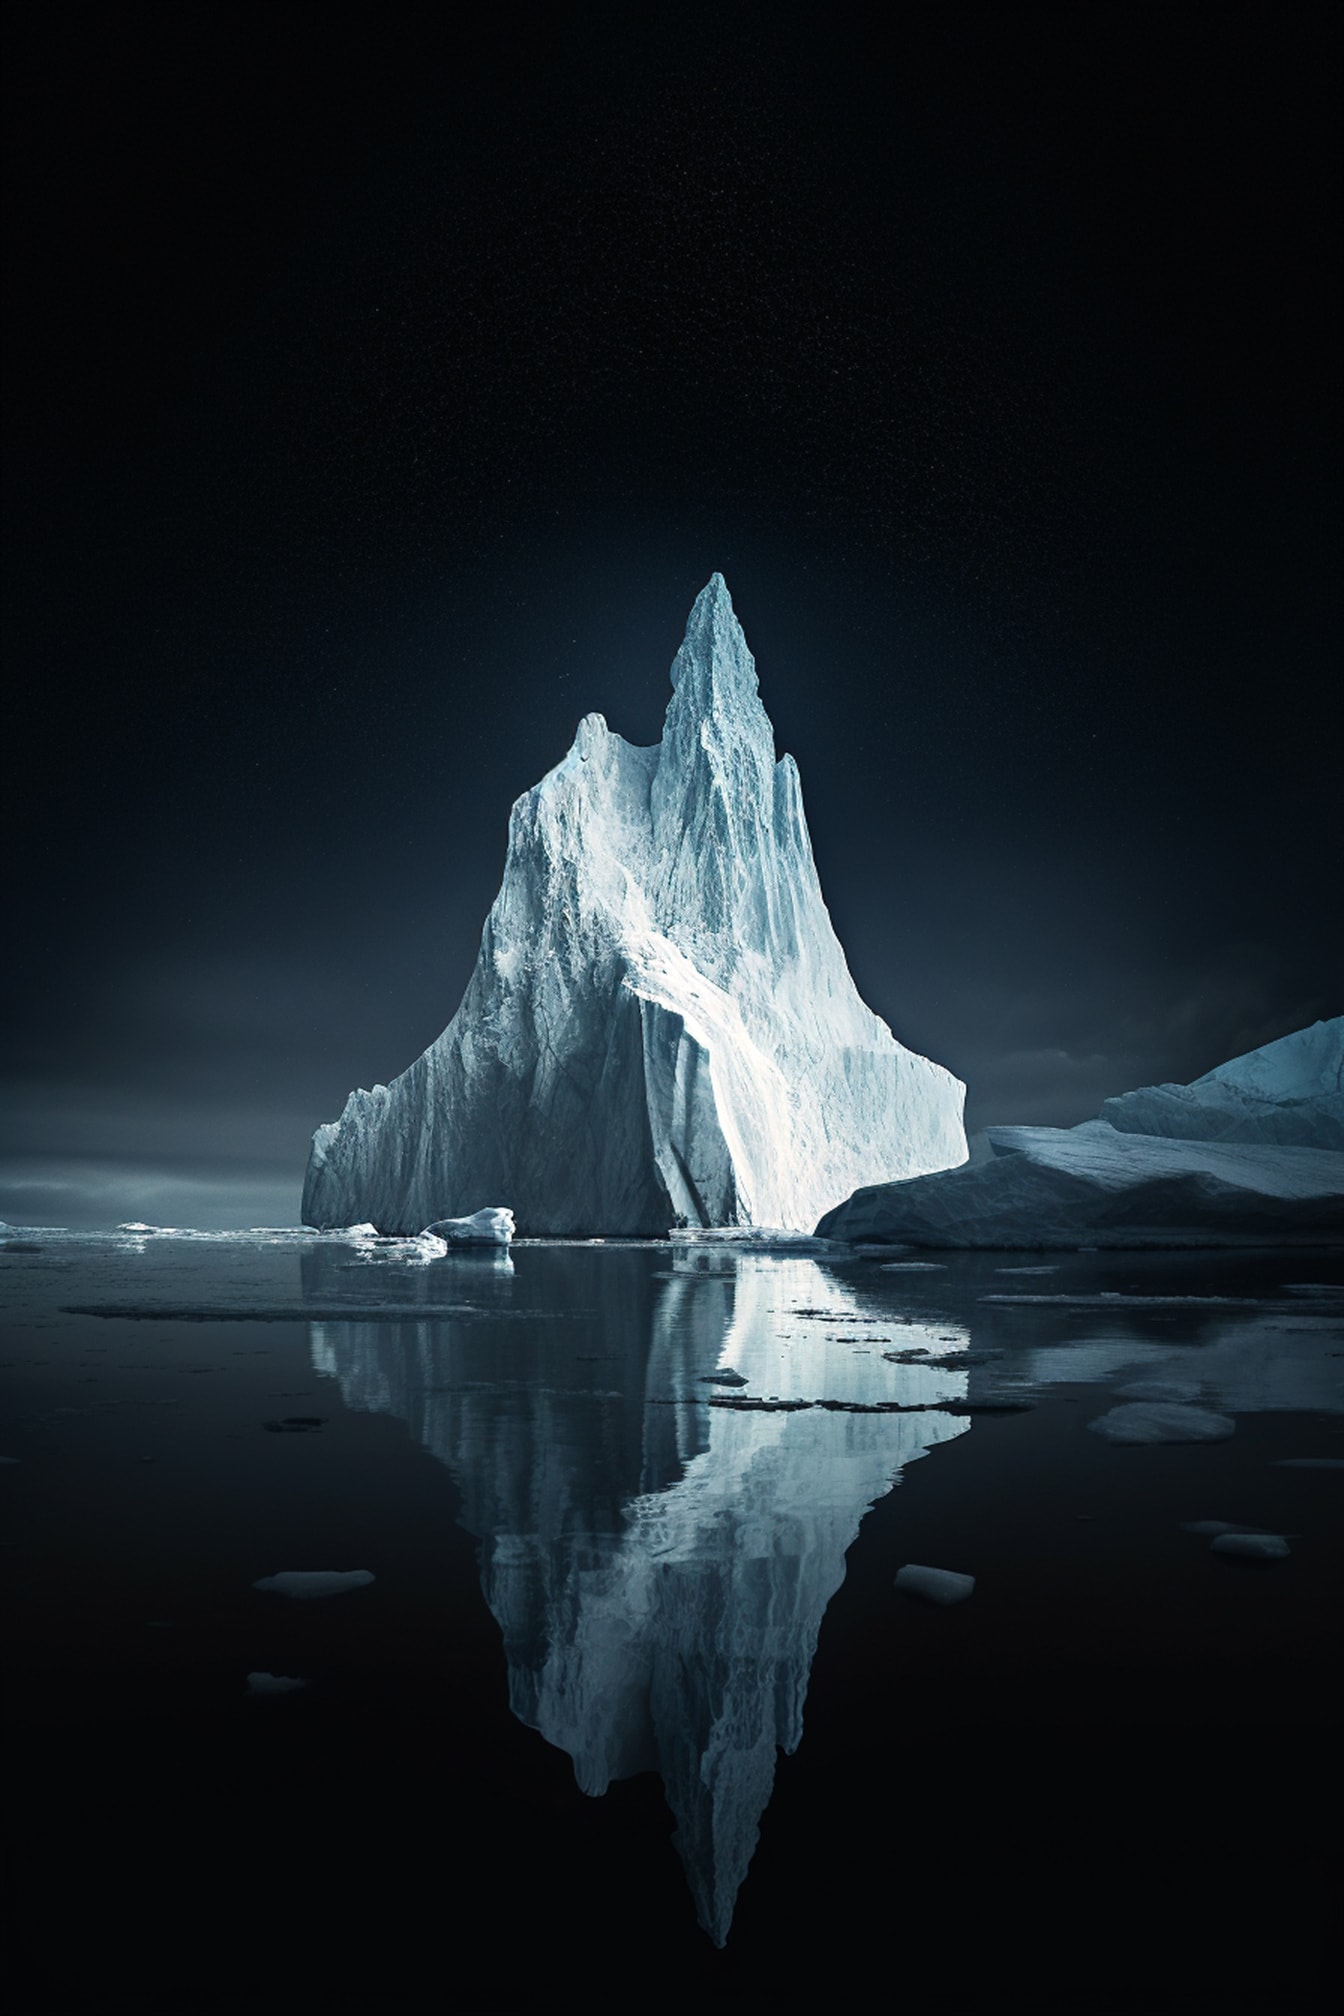 Mørk nat ved arktisk med isbjergsgrafik illsutration